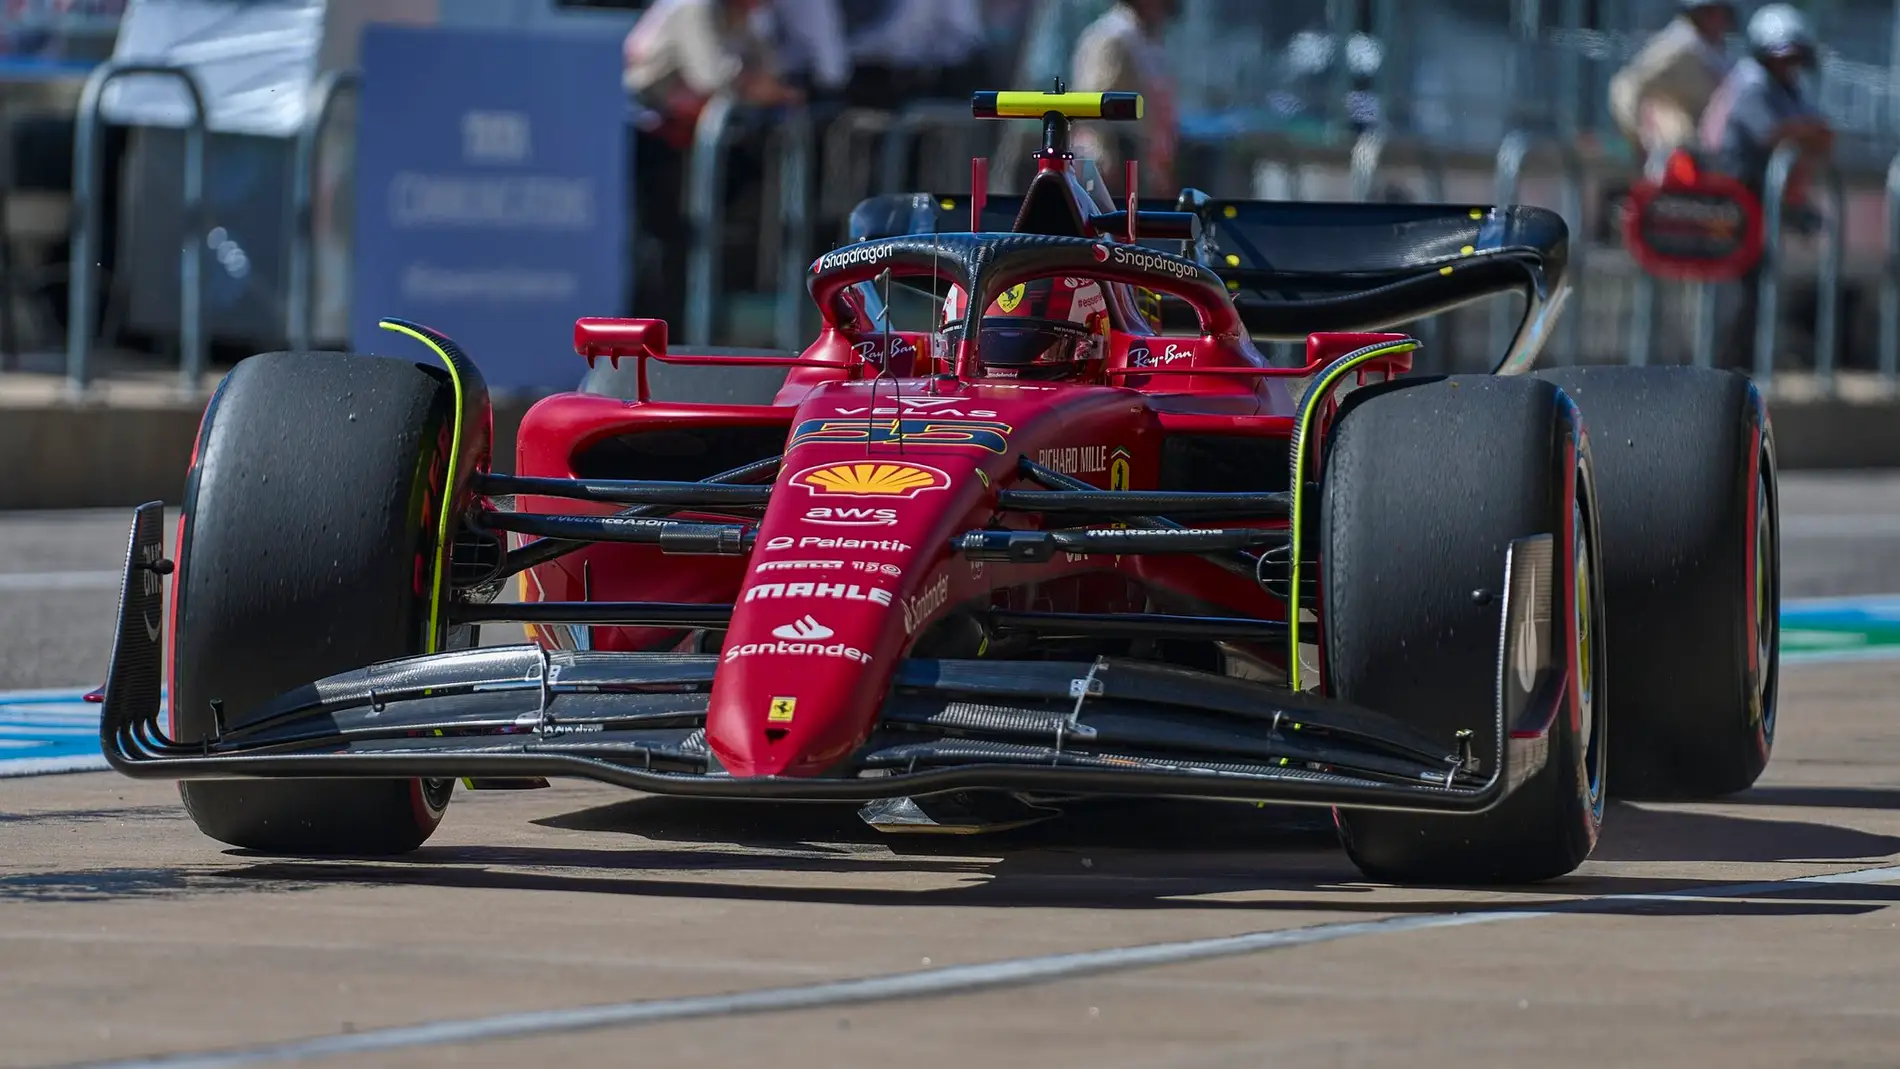 Carlos Sainz logra su segunda pole position en la Fórmula 1